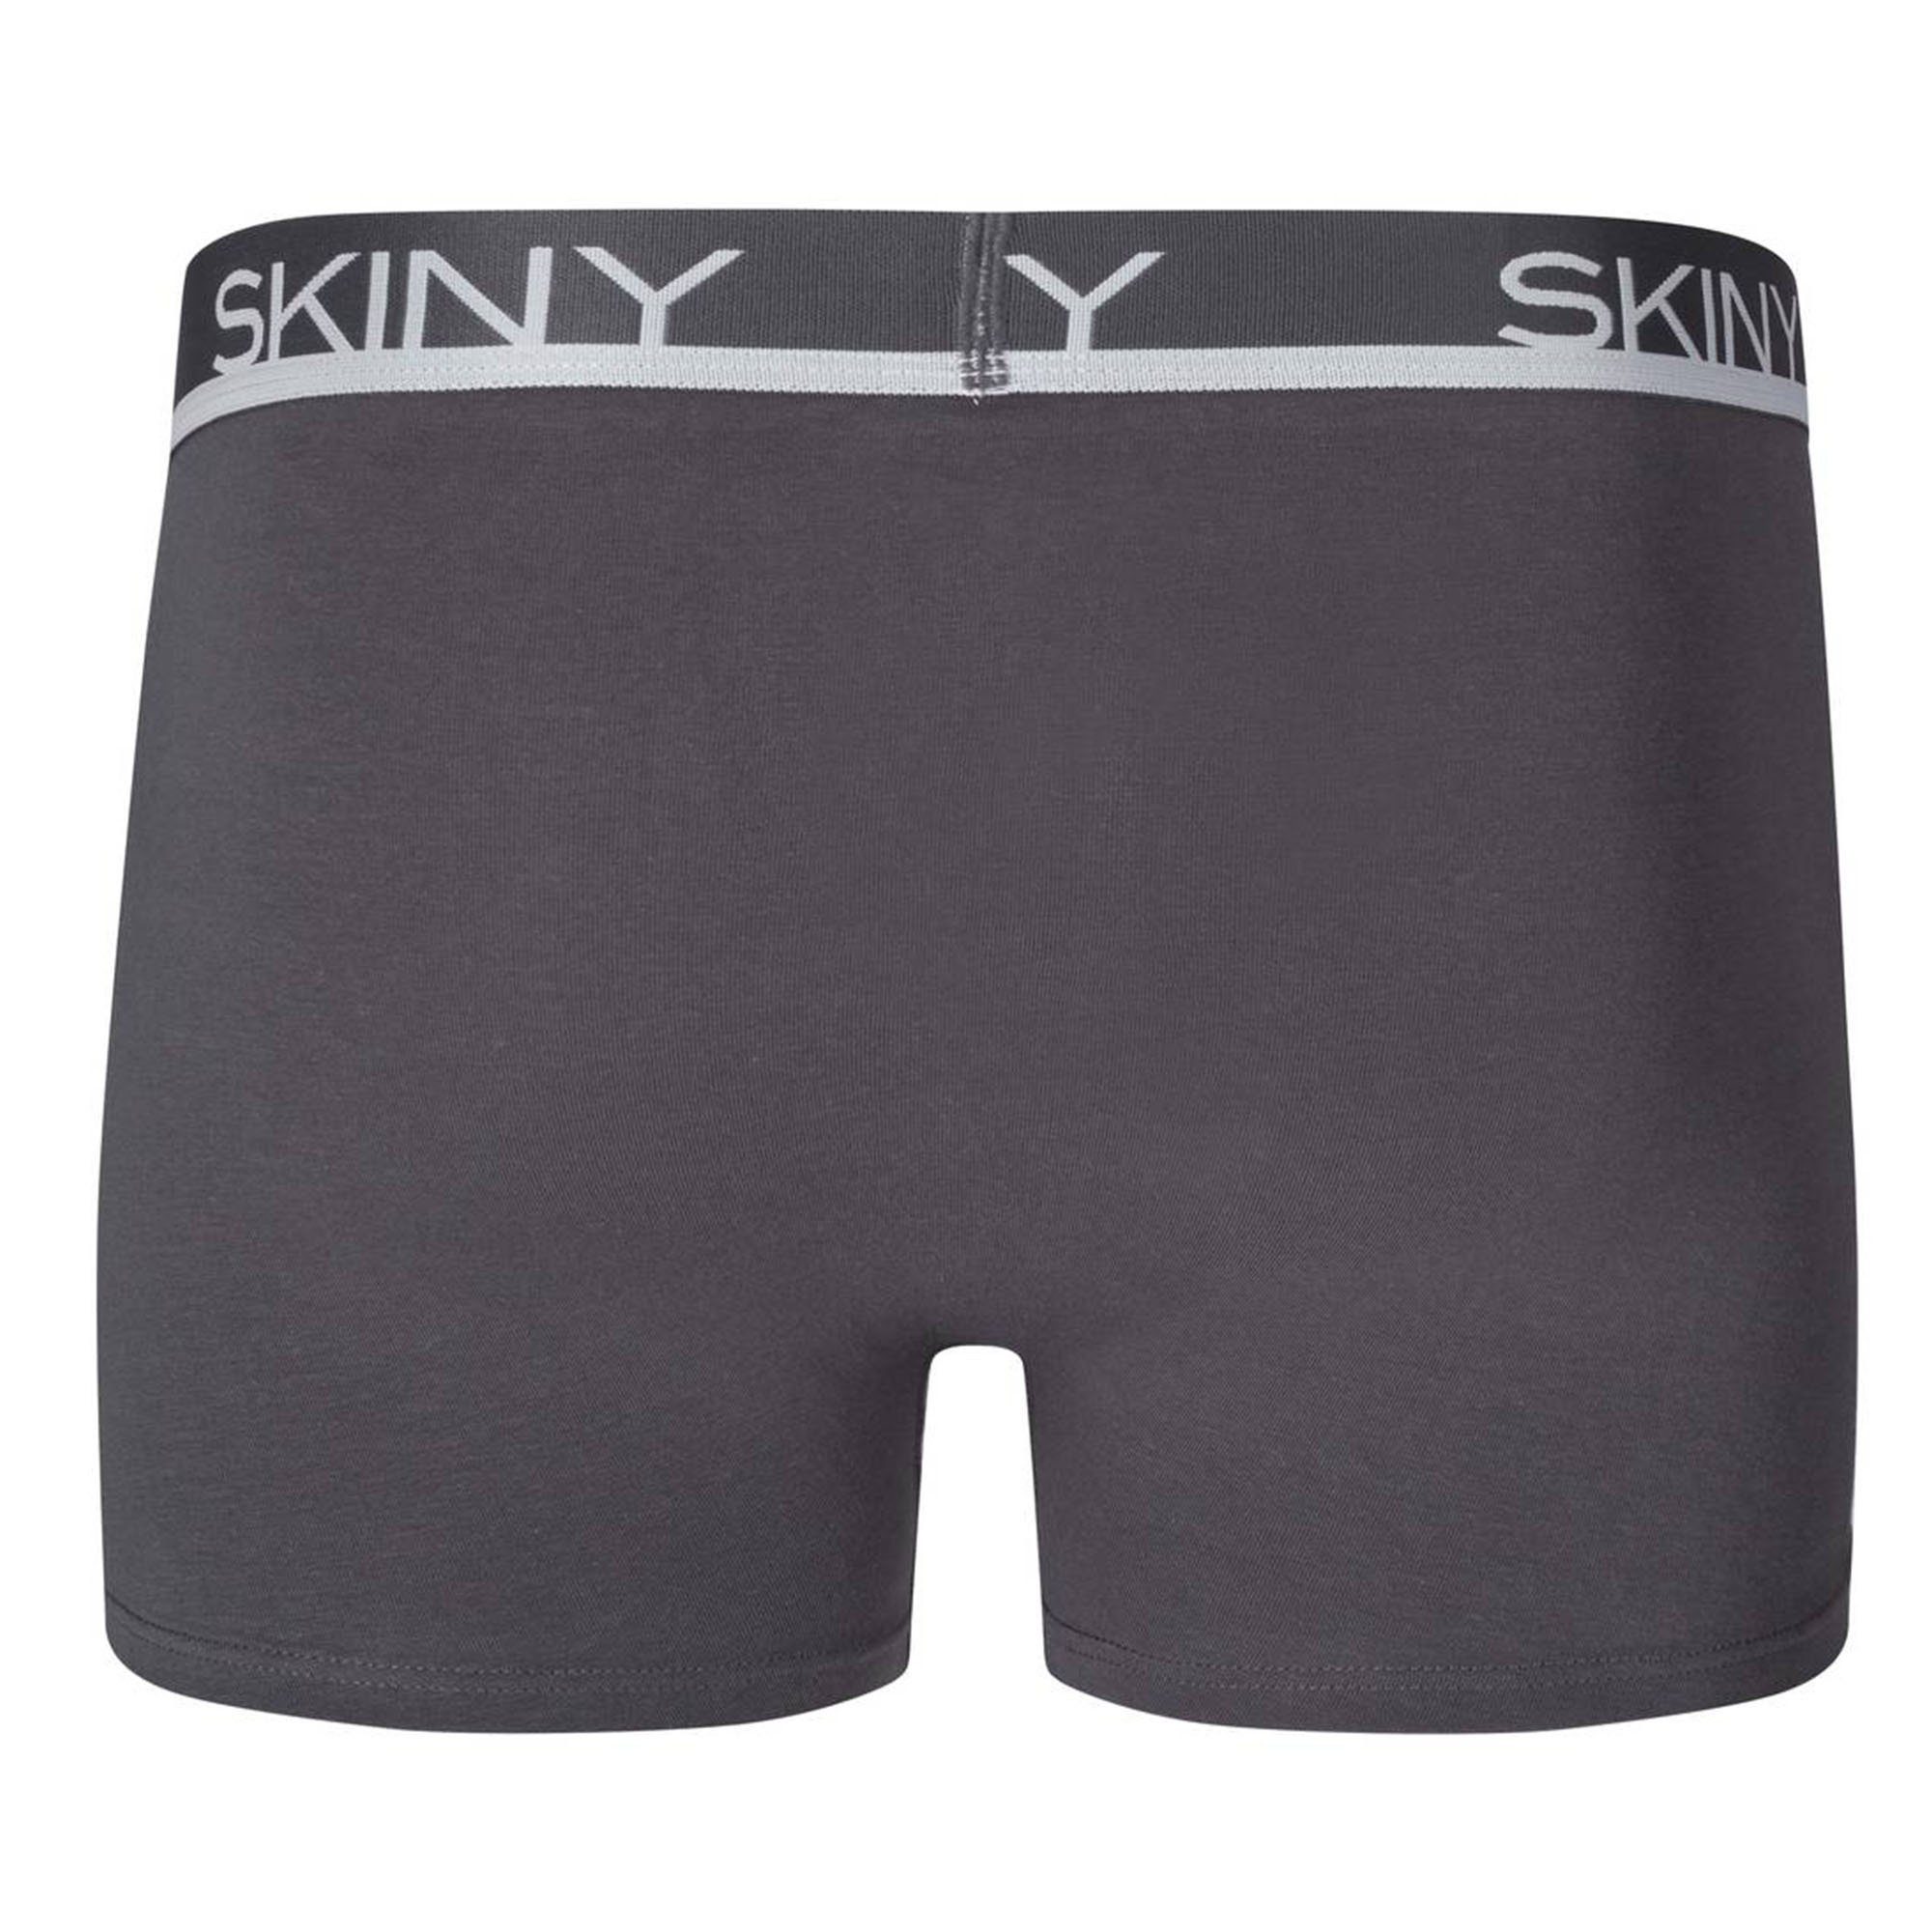 Trunks, Grau/Blau/Schwarz Boxer Pants Skiny - Shorts Boxer Herren 3er Pack